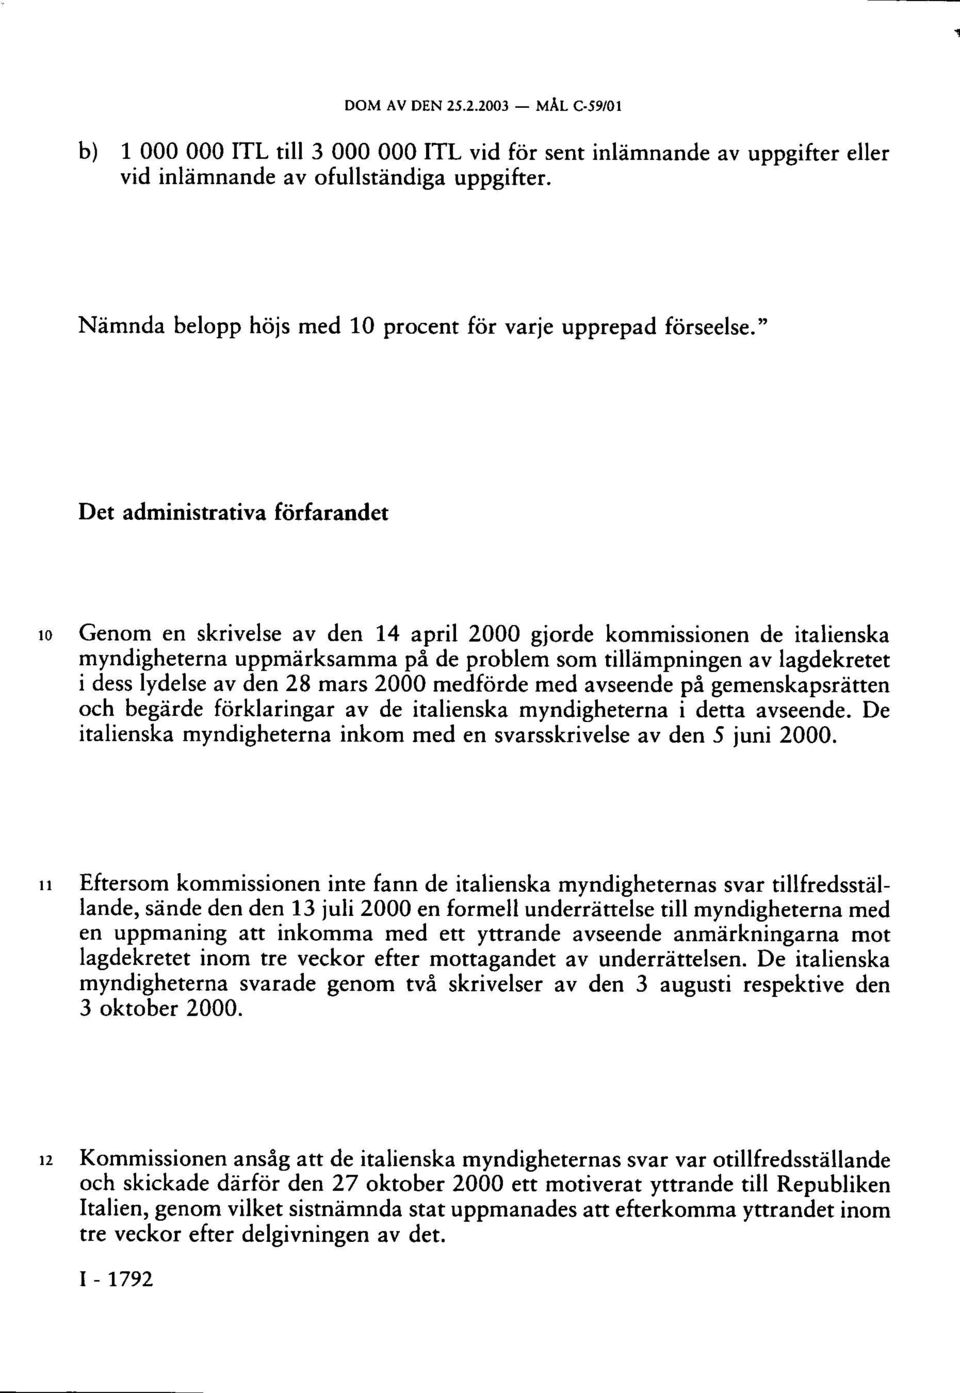 " Det administrativa förfarandet 10 Genom en skrivelse av den 14 april 2000 gjorde kommissionen de italienska myndigheterna uppmärksamma på de problem som tillämpningen av lagdekretet i dess lydelse